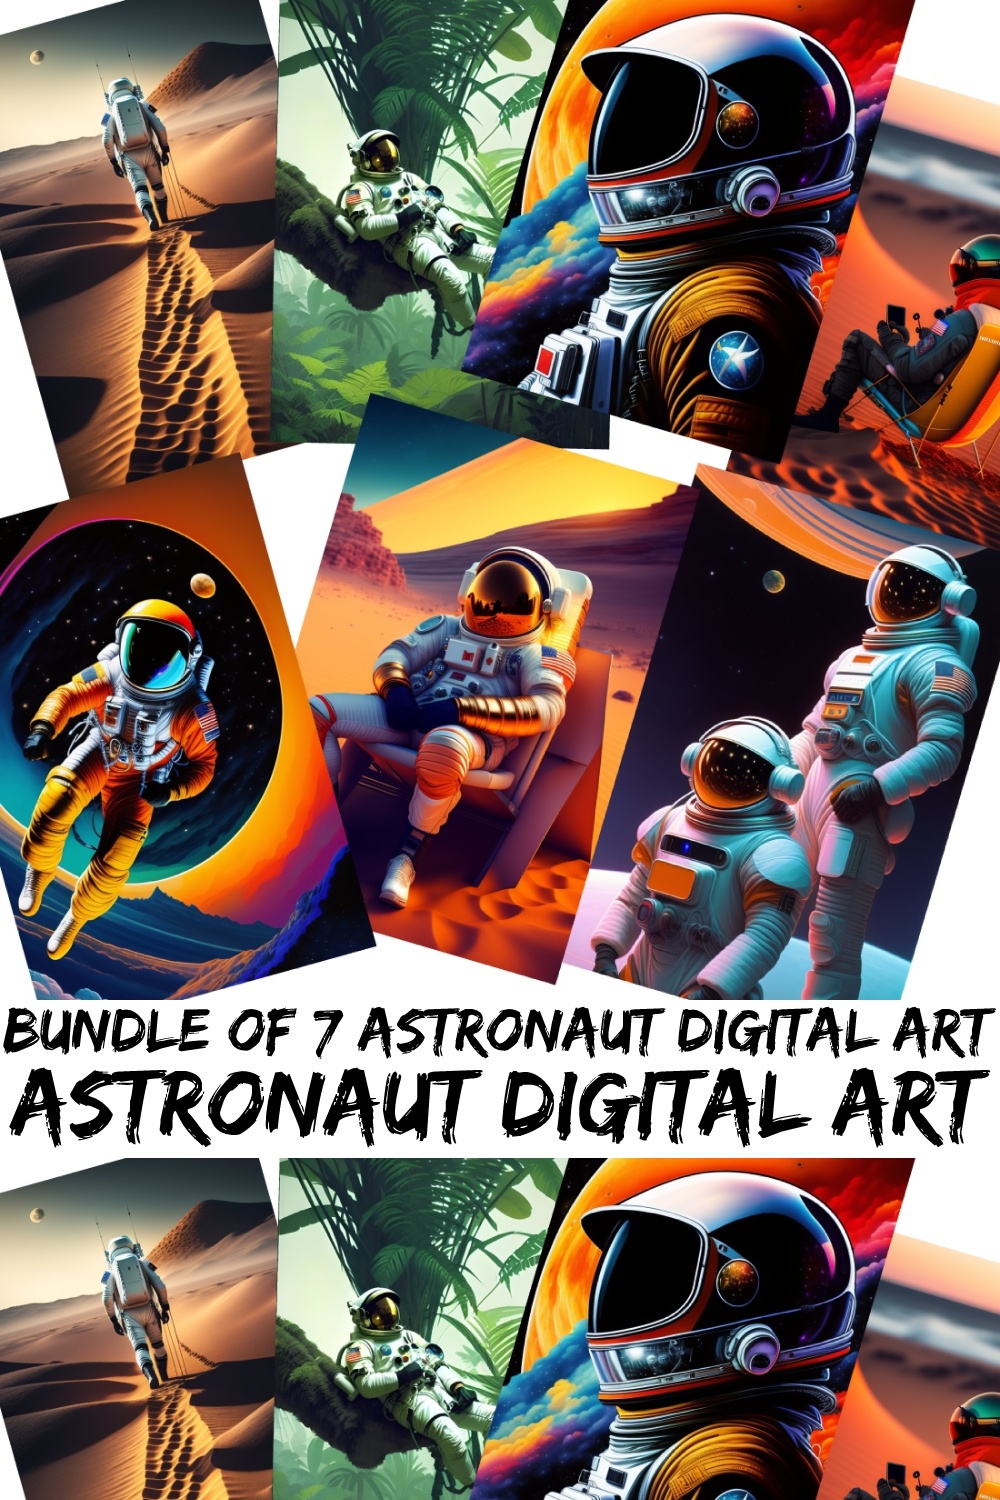 Bundle of Astronaut Digital Art pinterest preview image.